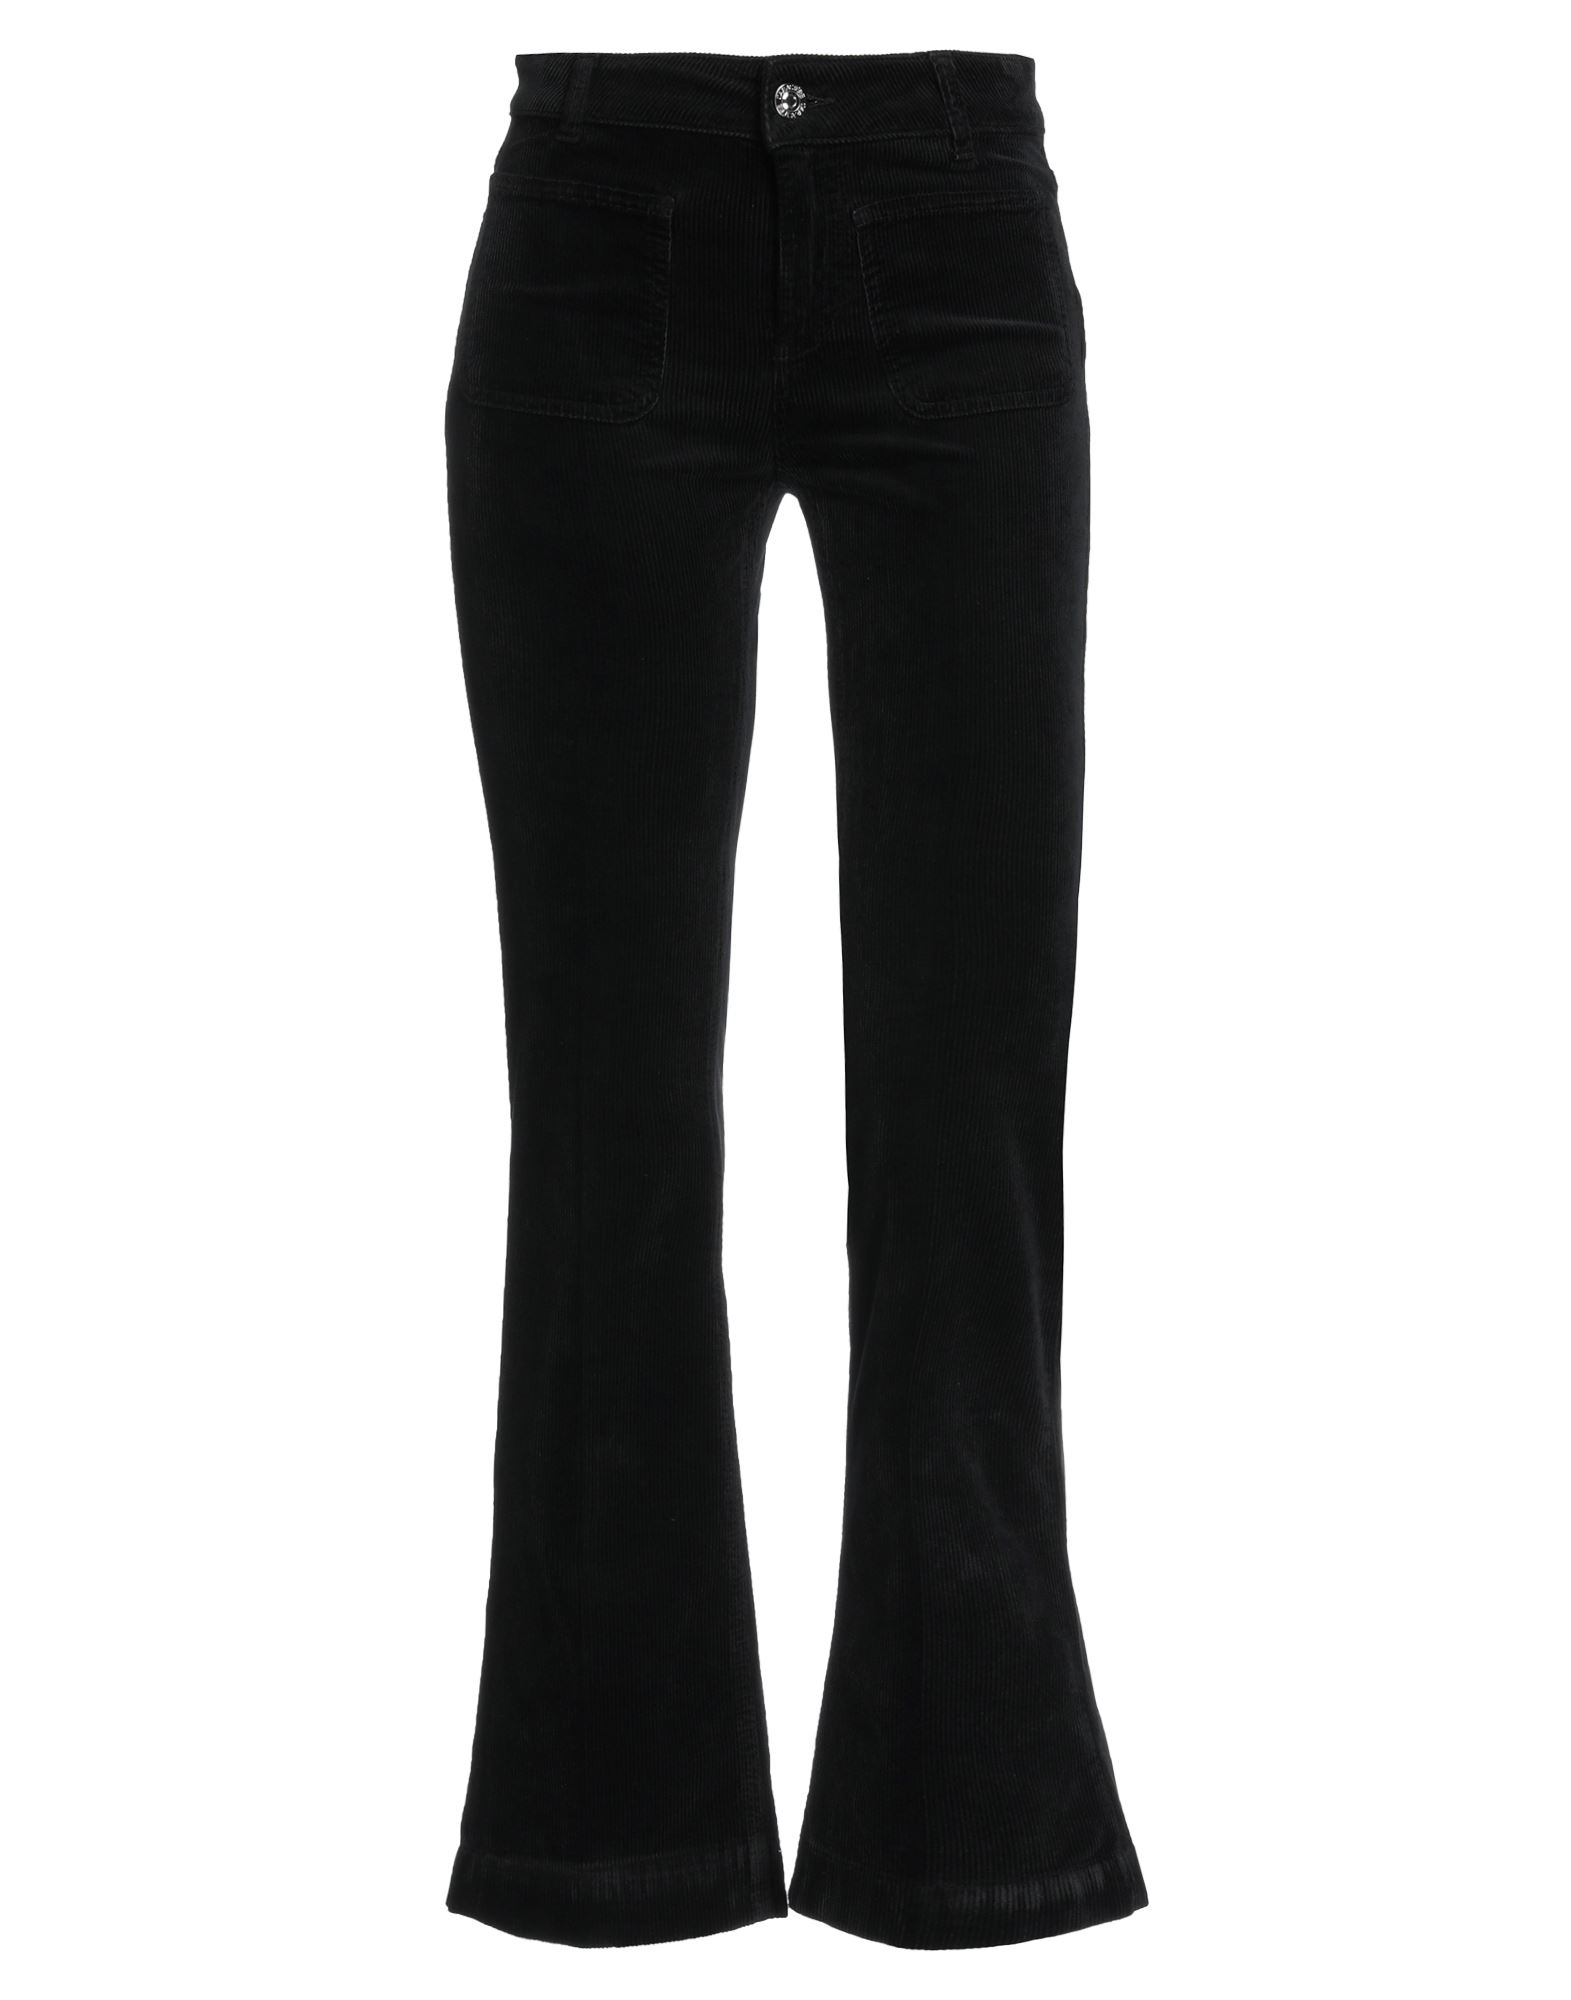 Shop Caractere Caractère Woman Pants Black Size 26 Cotton, Modal, Elastane